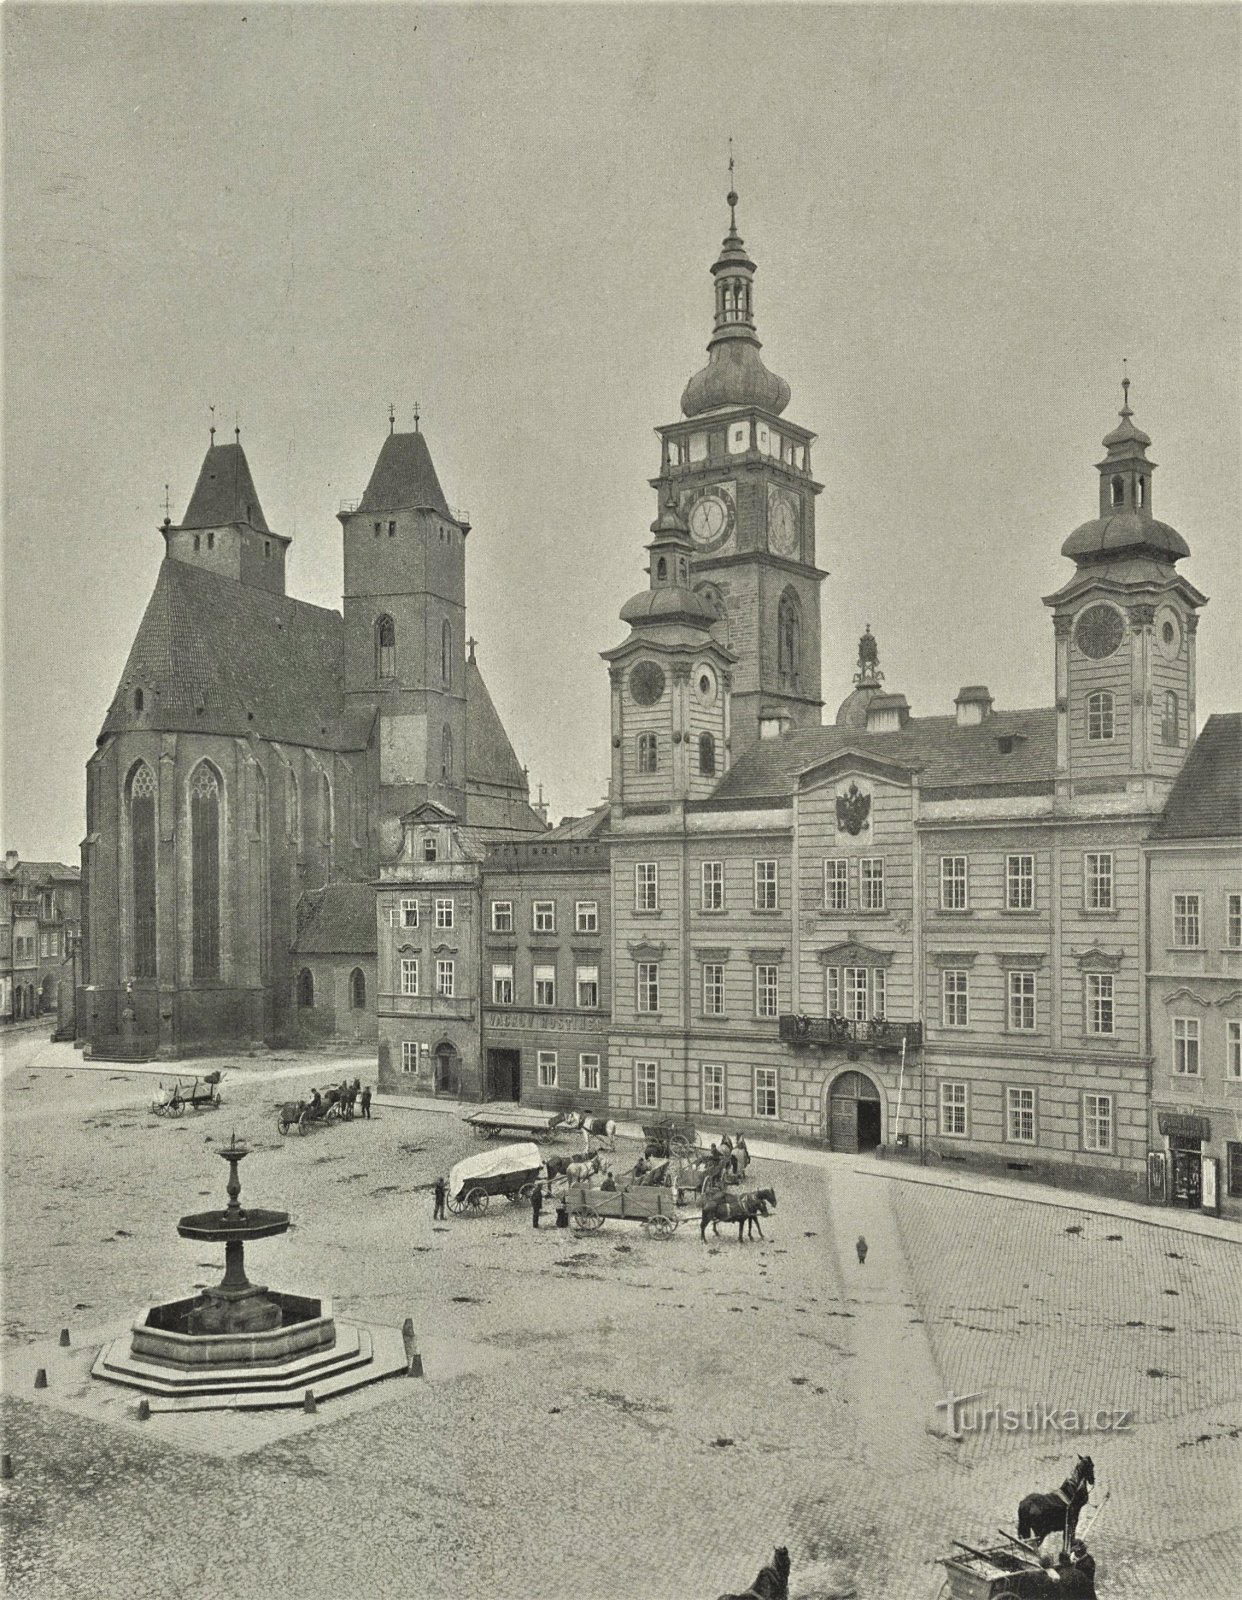 Велика площа в Градец Кралове до 1897 року